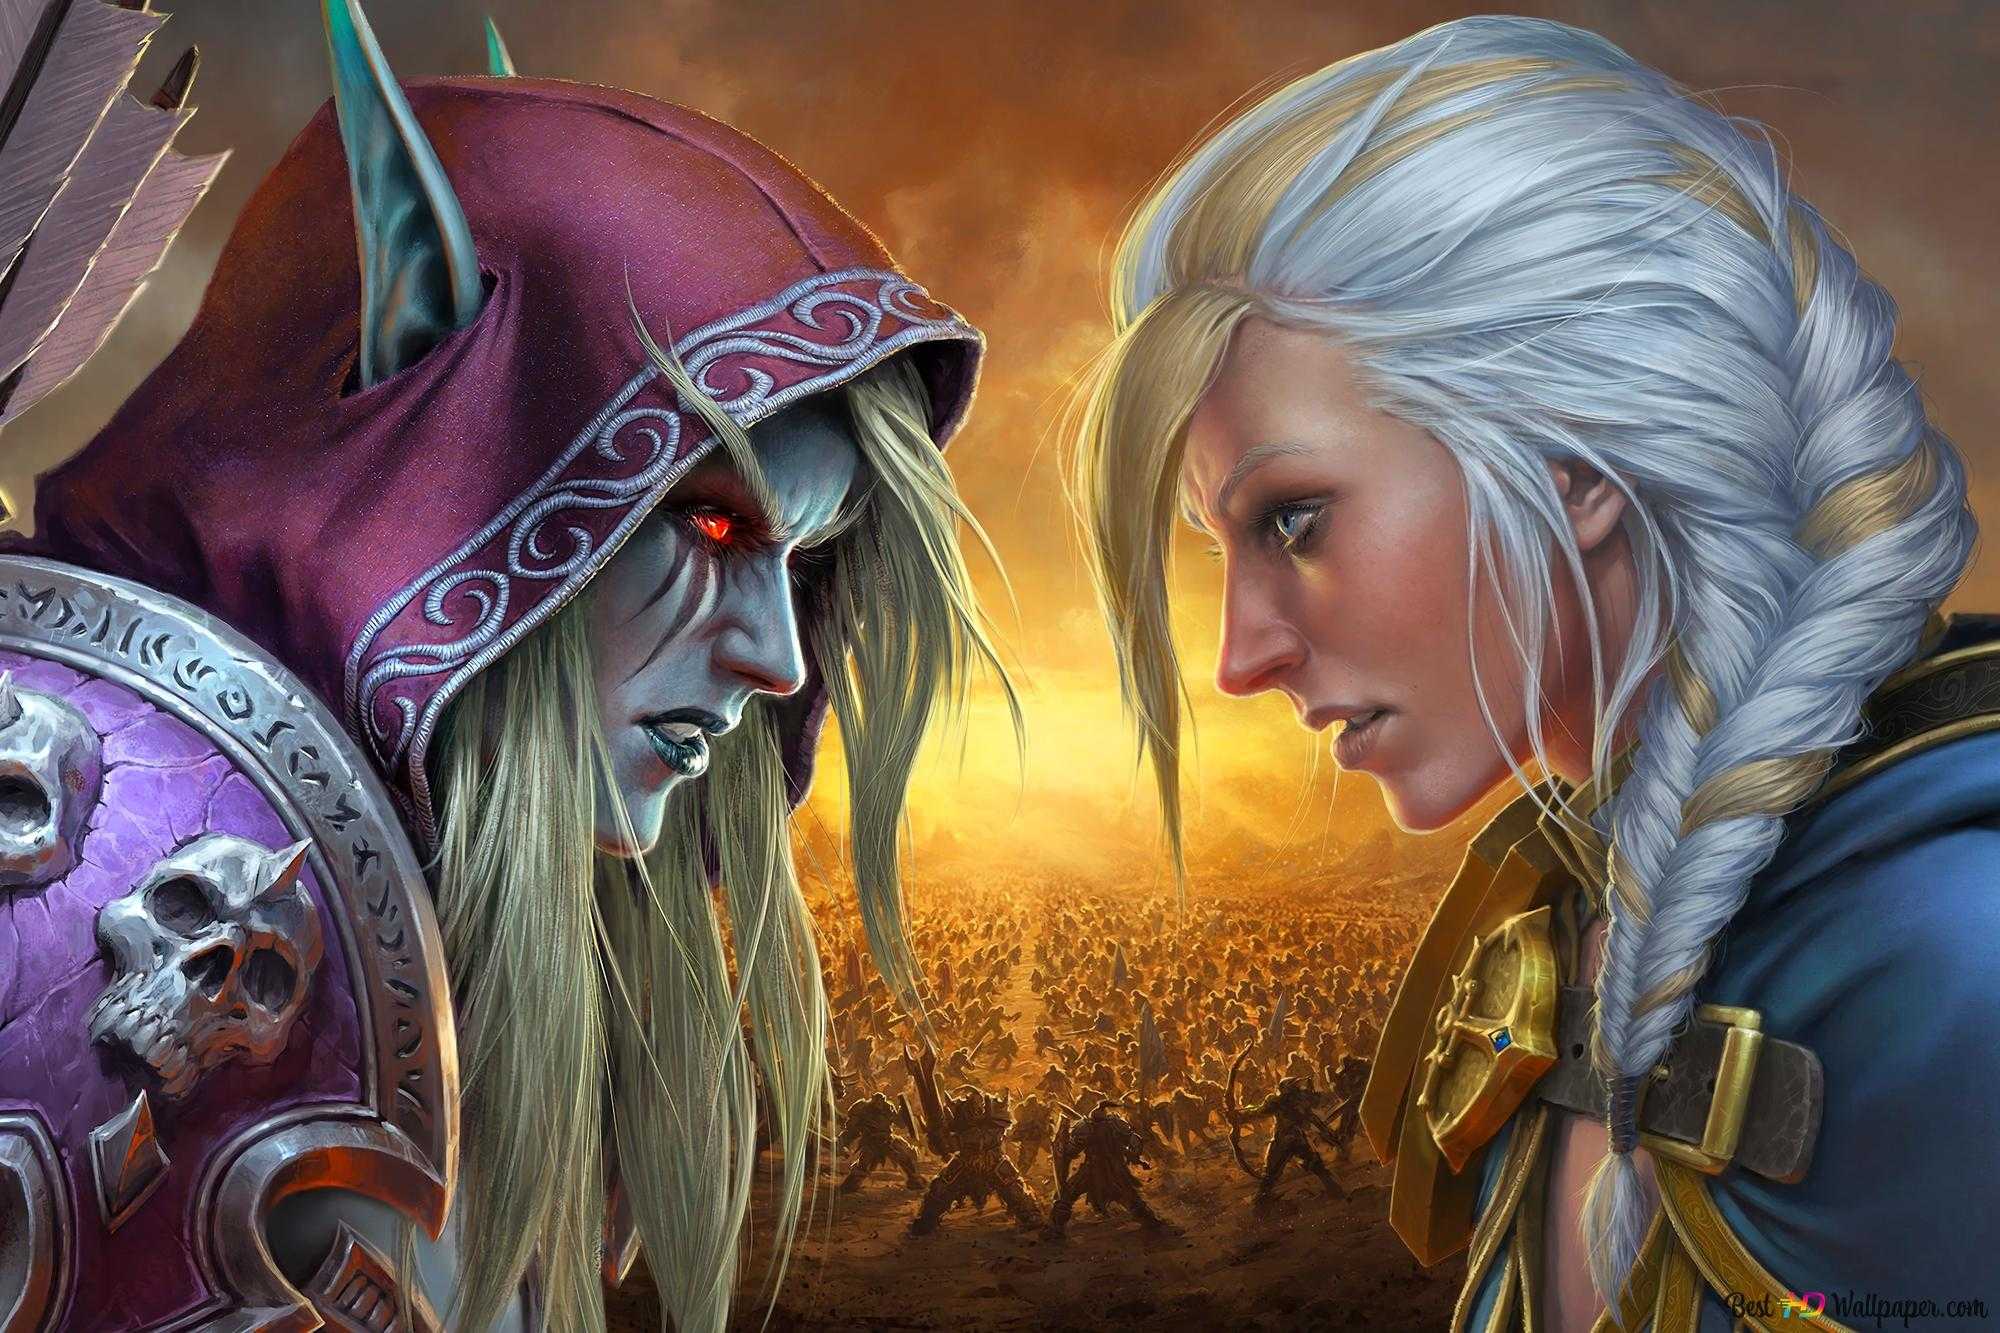 World of warcraft: battle for azeroth – сюжет и события дополнения